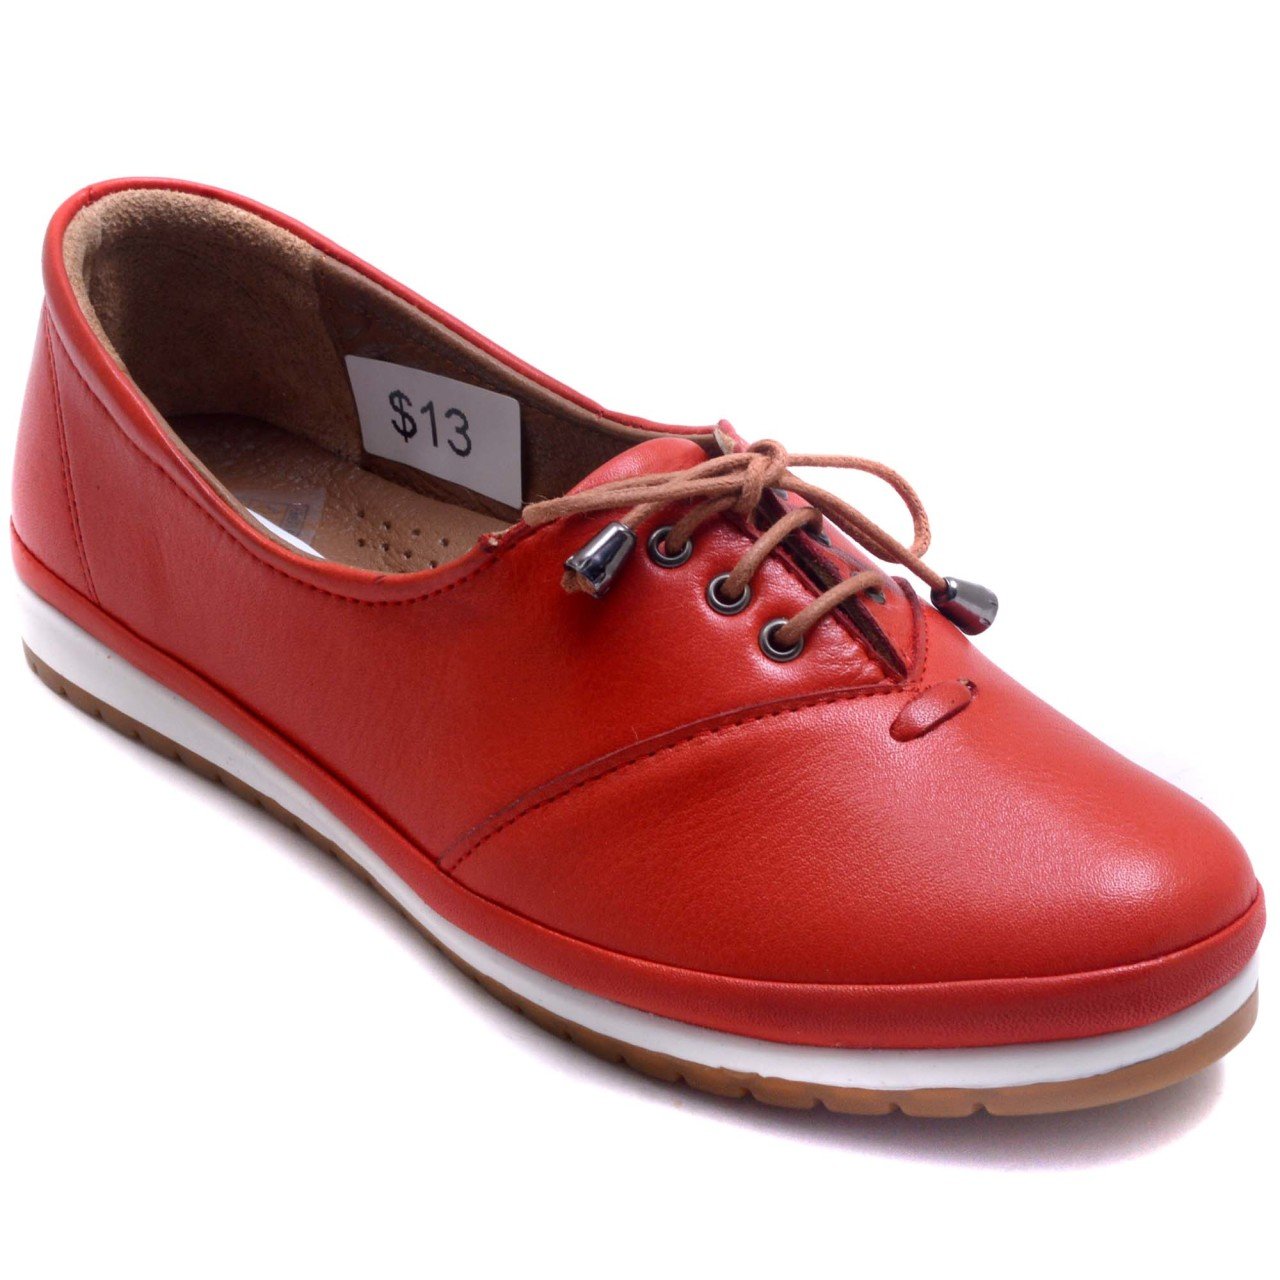 93-6 Düz Bağcıklı Kadın Günlük Ayakkabı - Kırmızı (Deri)